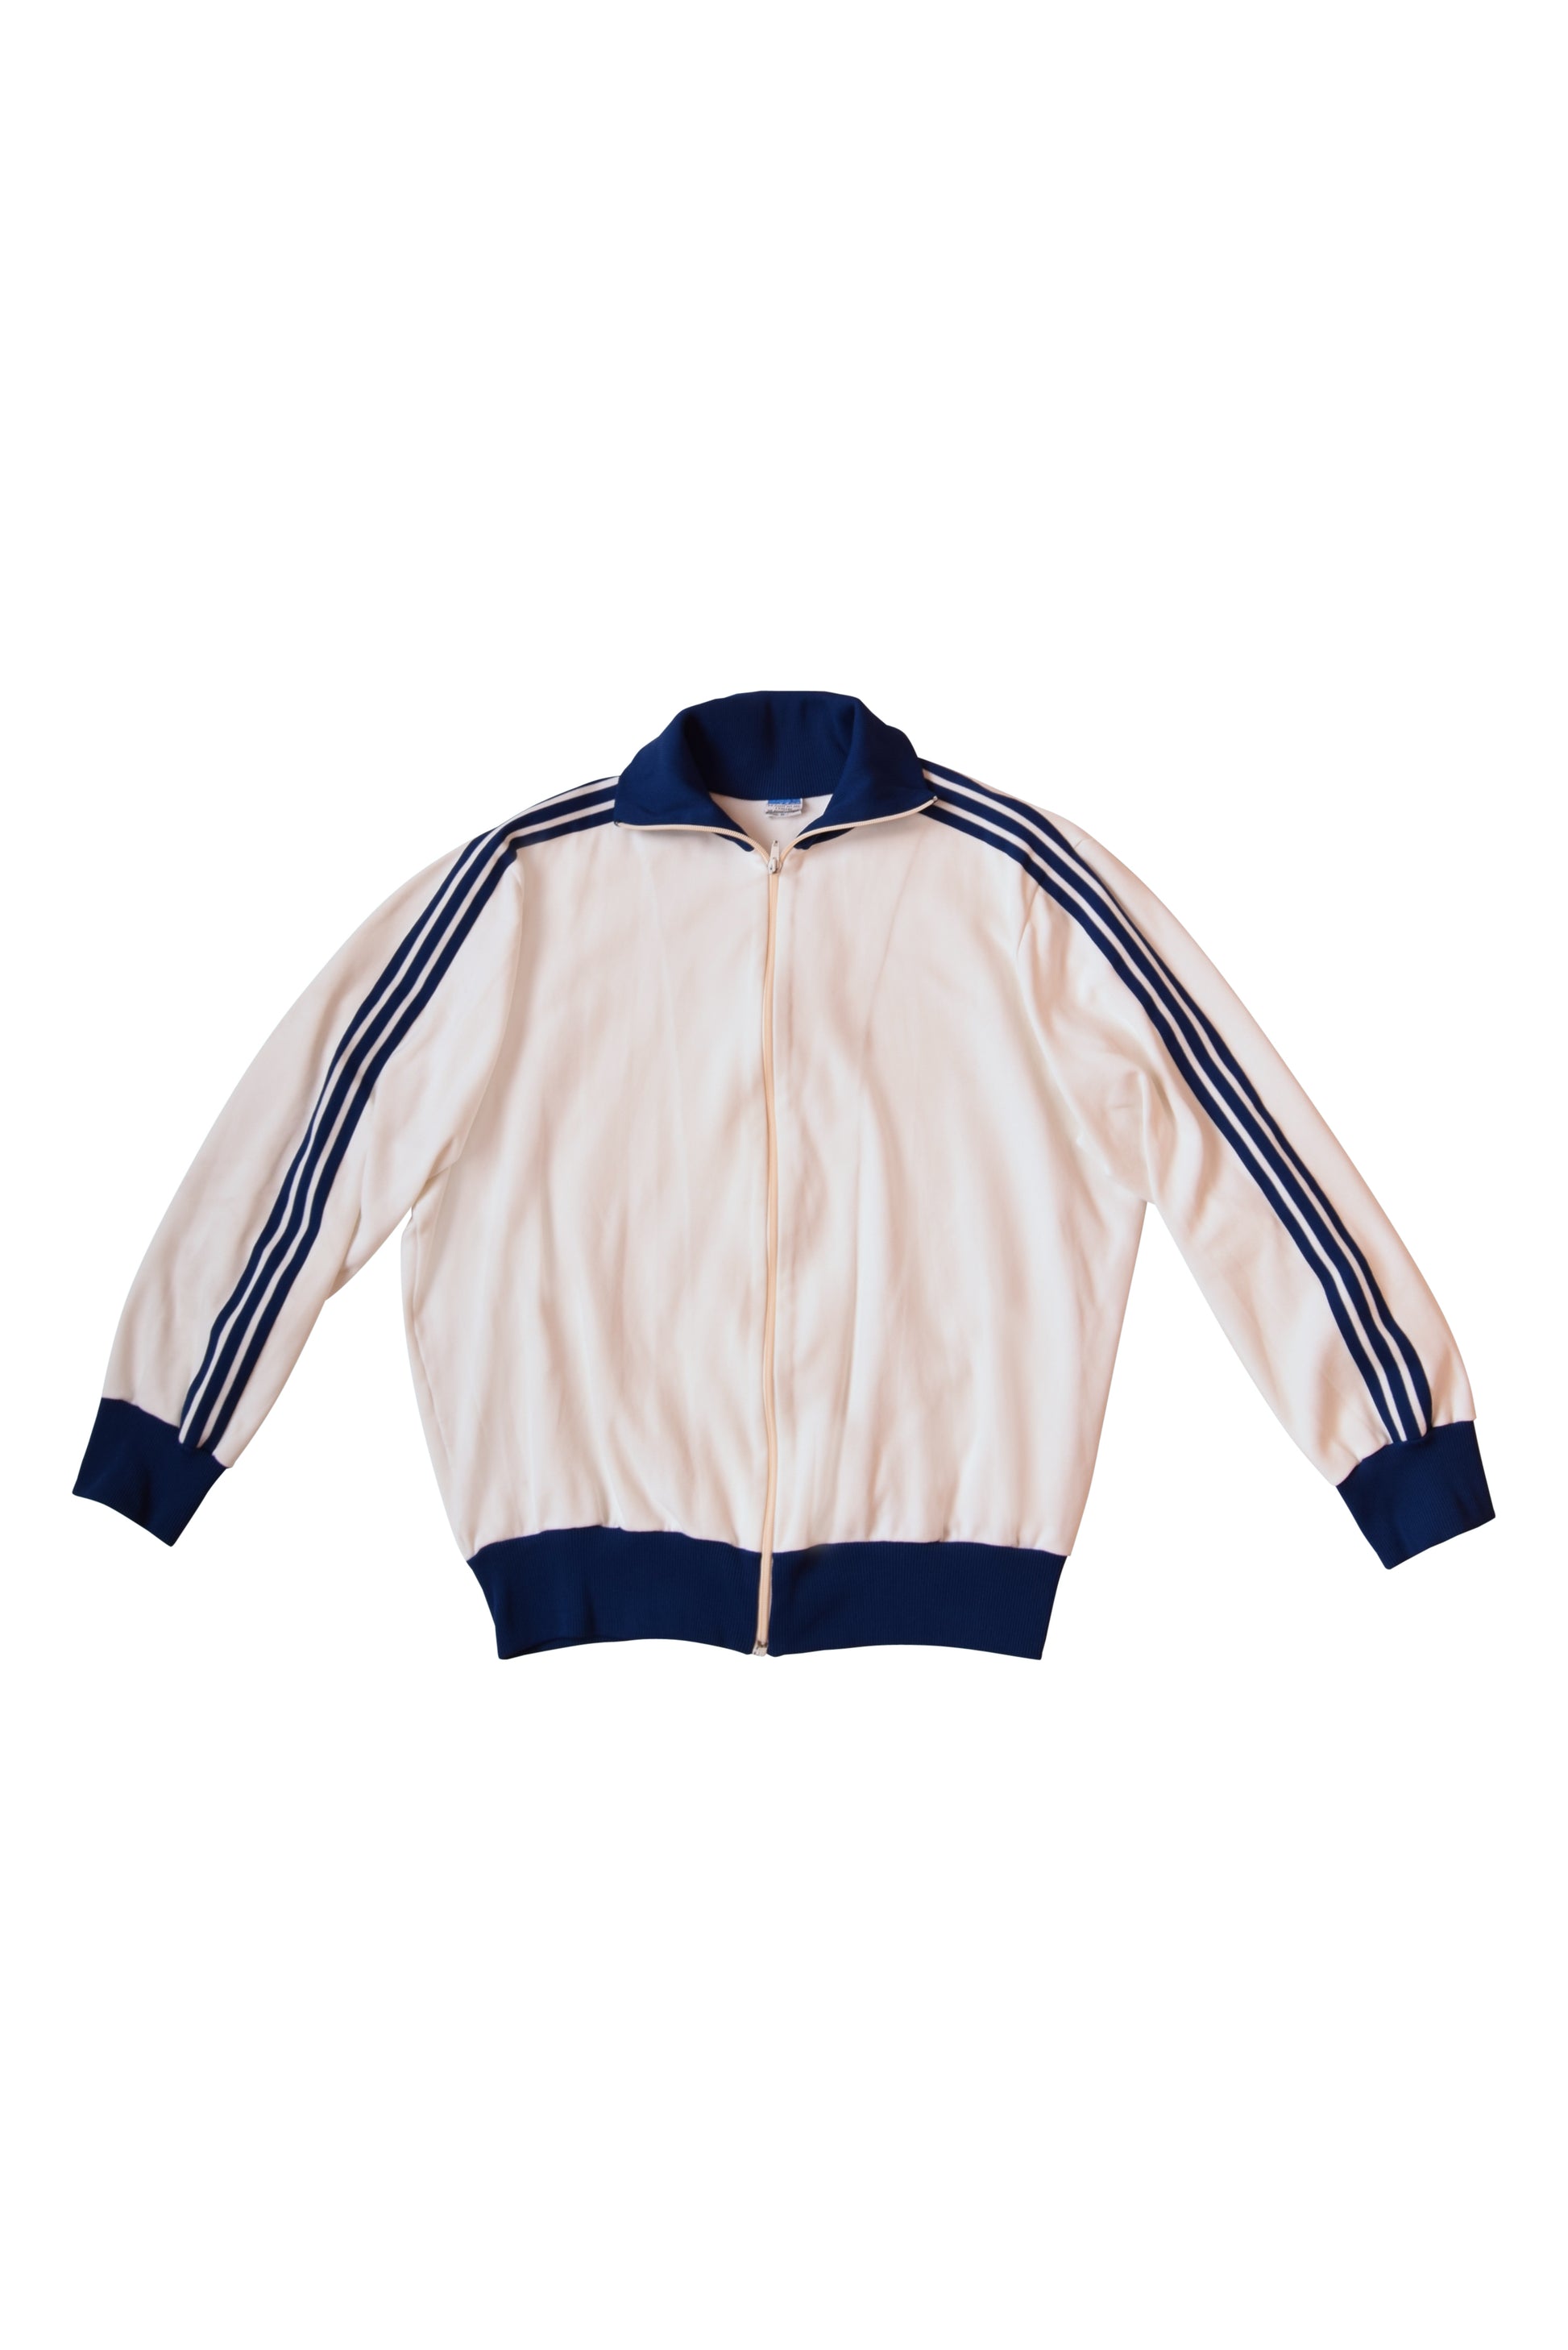 Vintage 70's Adidas Ein Schwahn - Erzeugnis Jacket / Track Top Made in West Germany White Size M-L